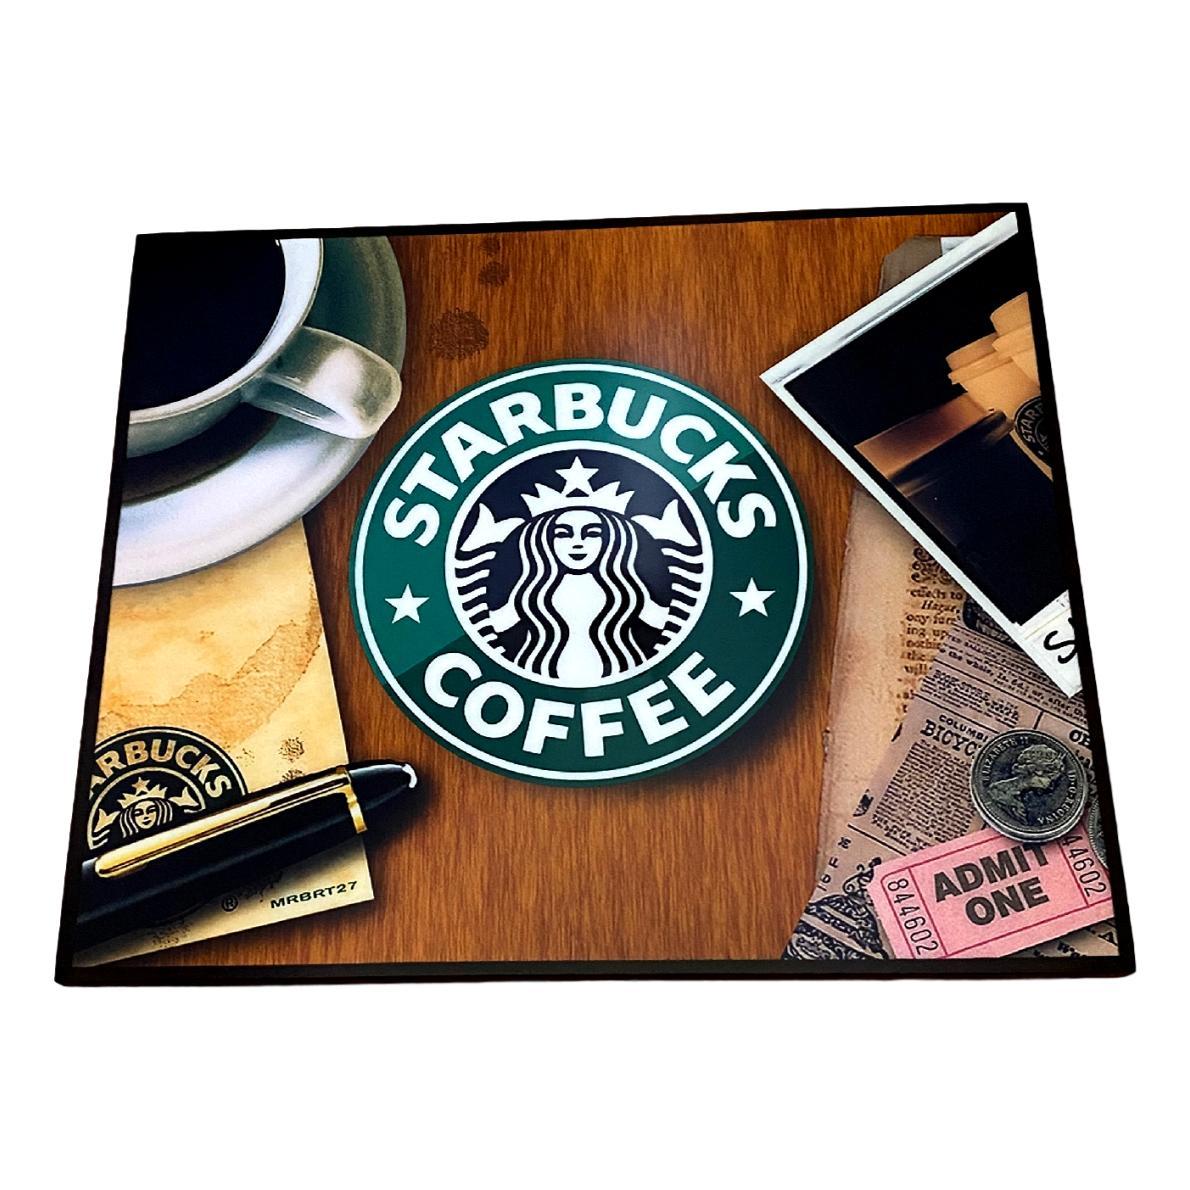 楽天市場 送料無料 スタバ スターバックス Starbucks Coffee アートパネル 壁掛け 据え置き 壁掛けフック付き アーティスト Popパネル インテリア アートフレーム ポスター Cool クール 面白い かっこいい アート 雑貨 カフェ リビング 額付き 額縁 オシャレ Alice